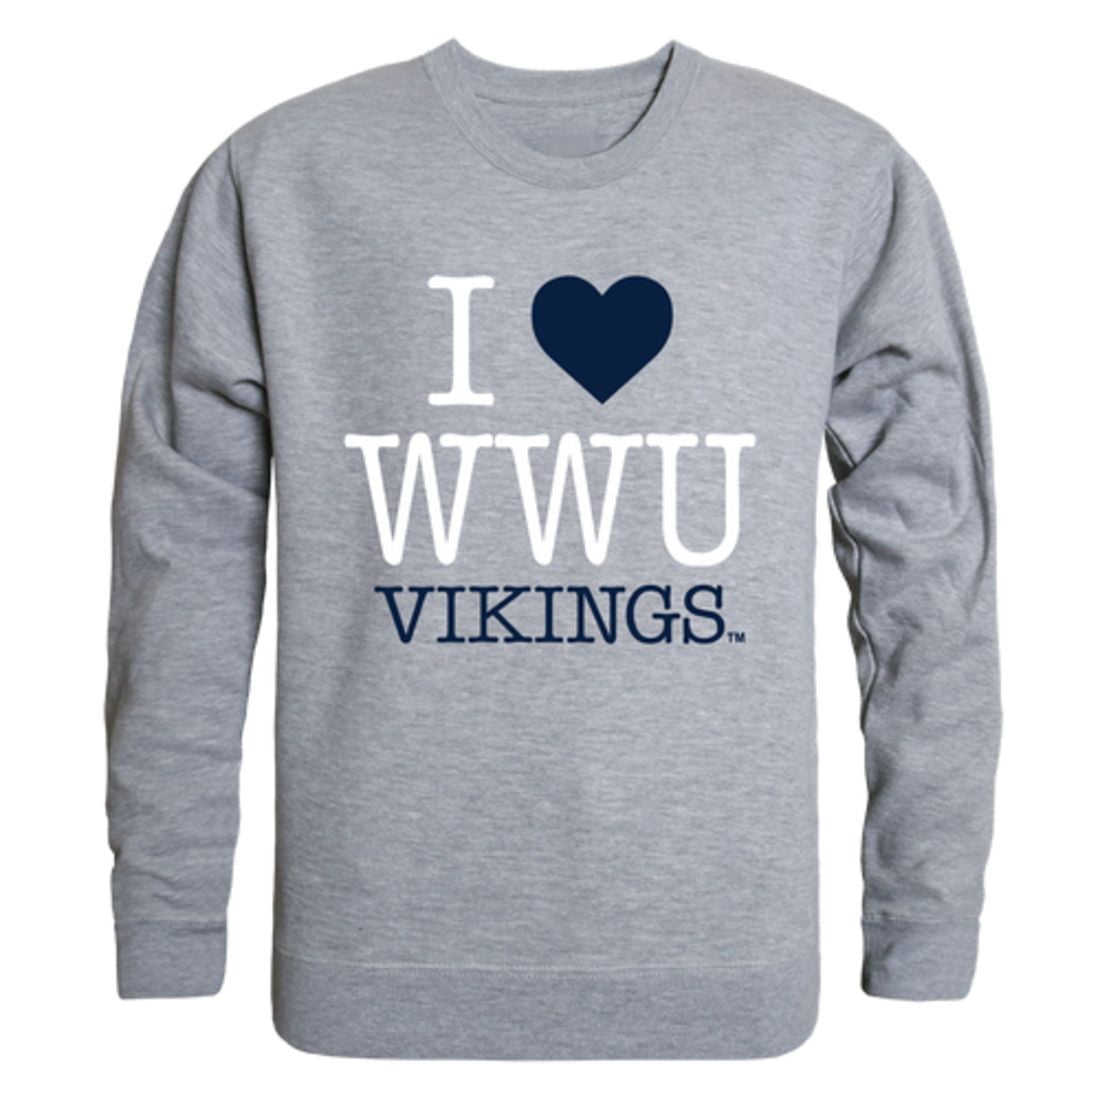 Western Washington University WWU Vikings Lanyard